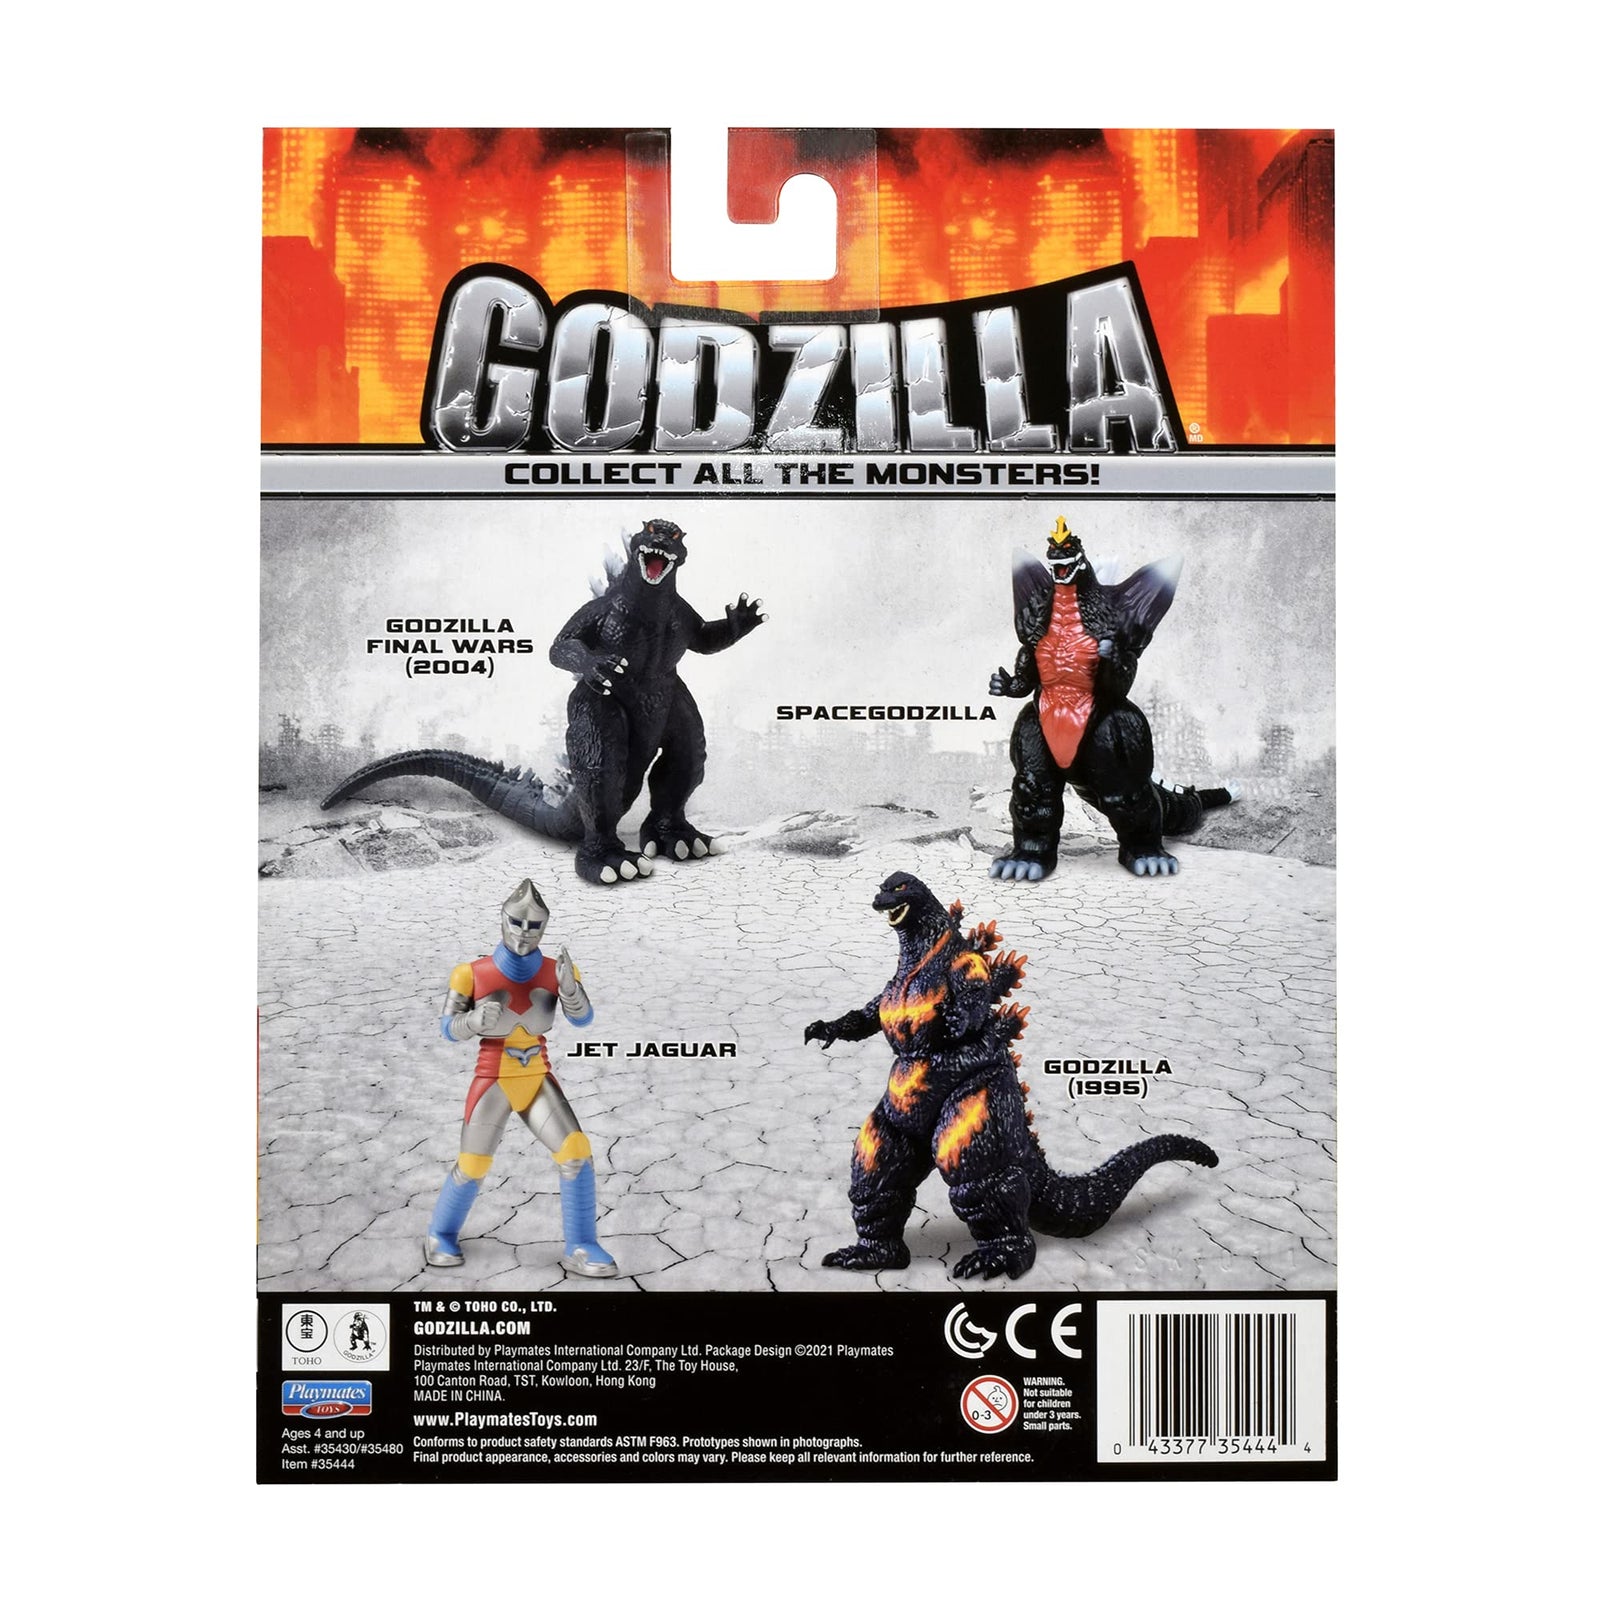 Godzilla 6.5" Classic Burning (1995) Figure (35444)